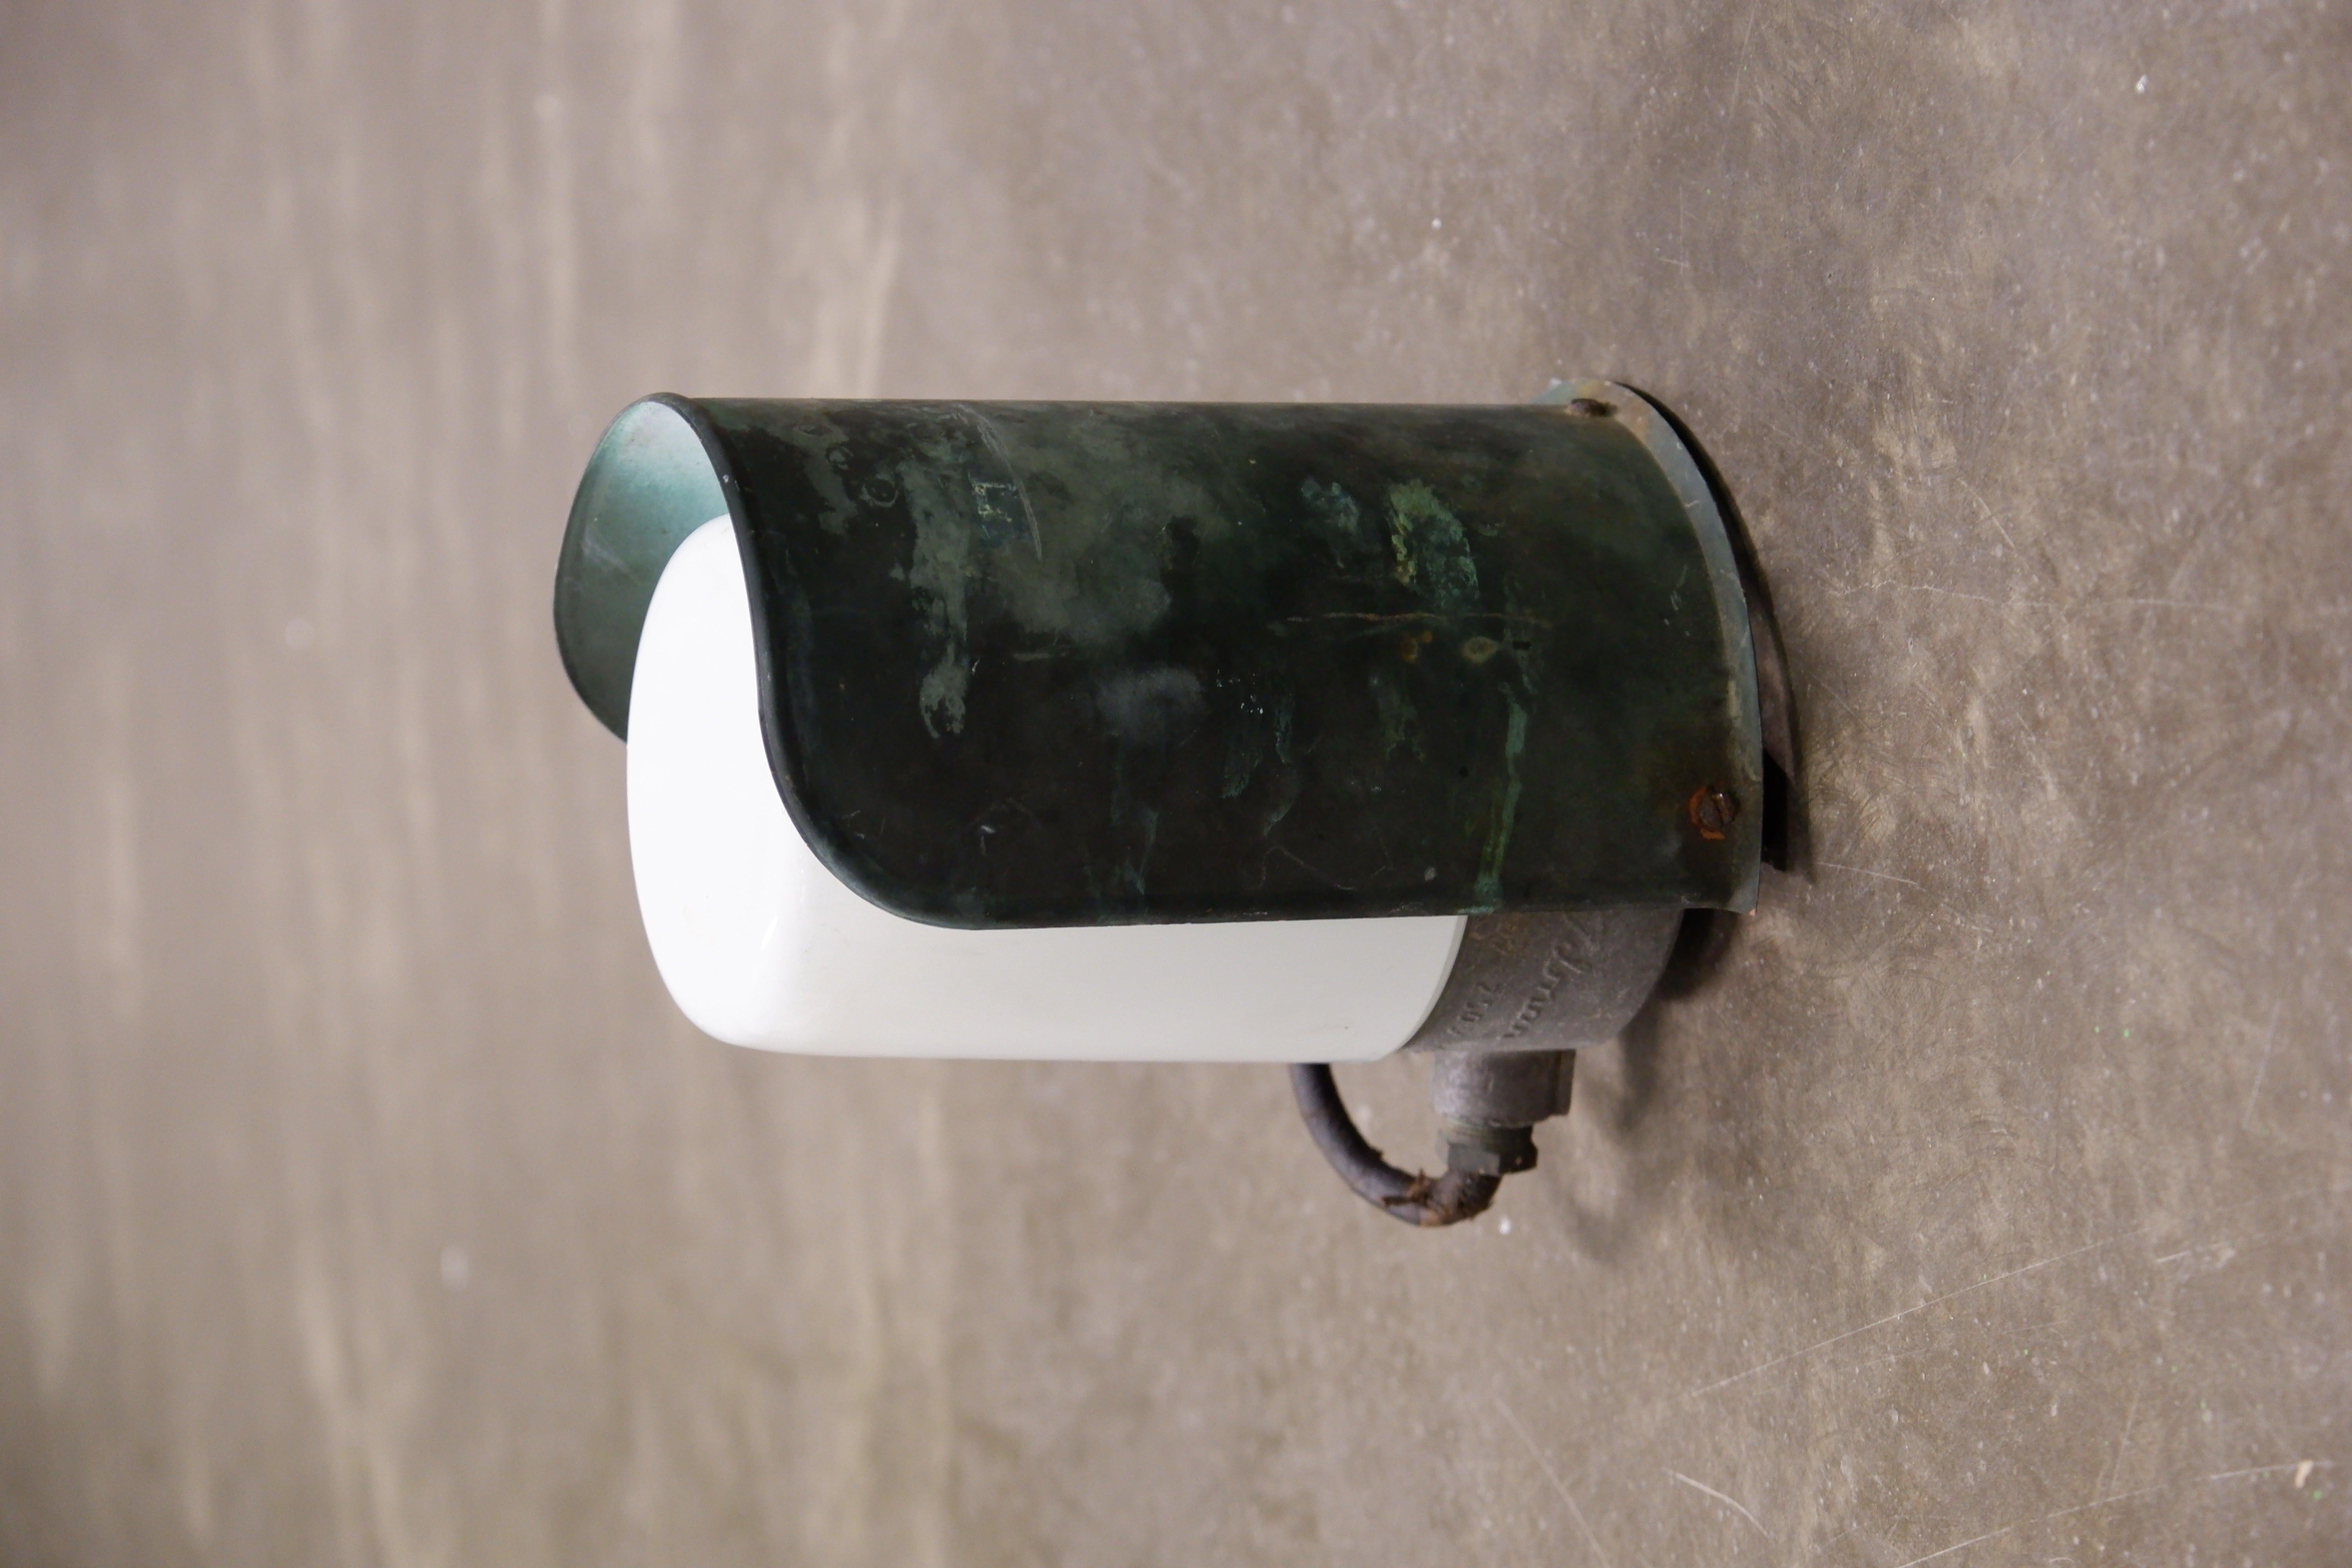 Très forte lampe murale en cuivre patiné conçue par Paavo Tynell et éditée par Idman dans les années 50. L'applique murale a été conçue à l'origine pour être utilisée à l'extérieur mais peut aussi facilement être utilisée à l'intérieur. La patine du